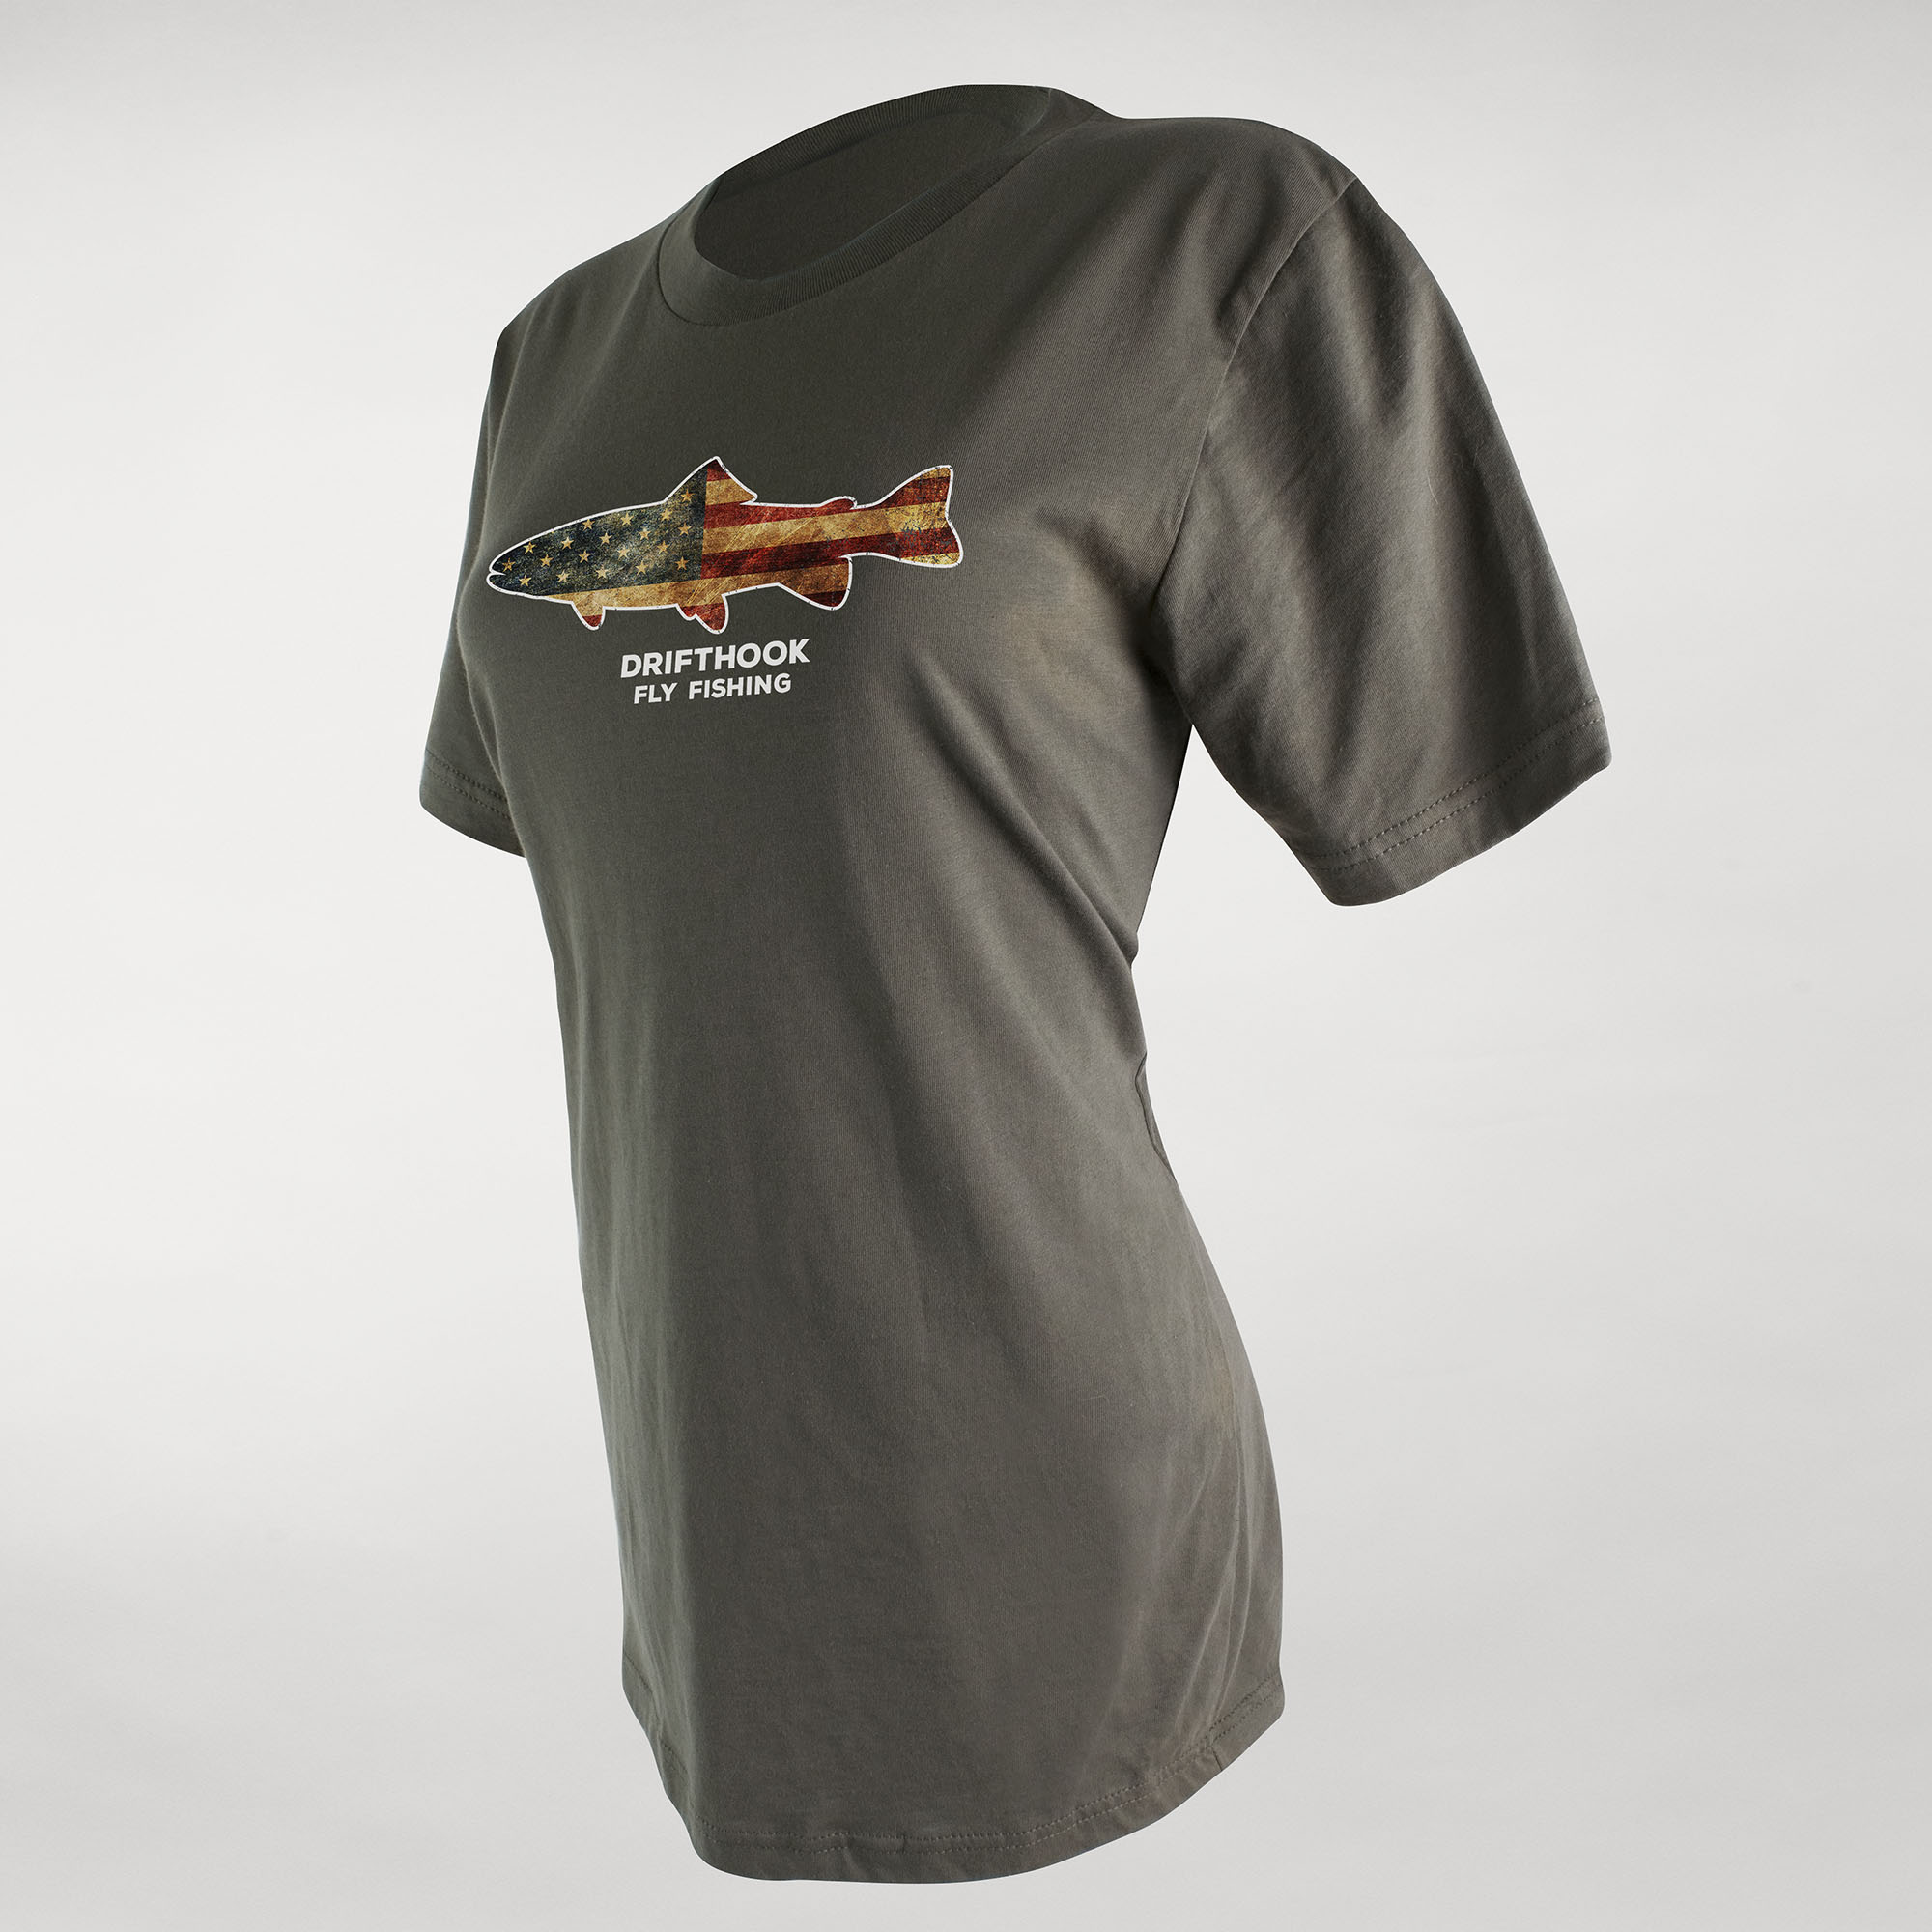 Drifthook USA Women’s T-Shirt - Drifthook